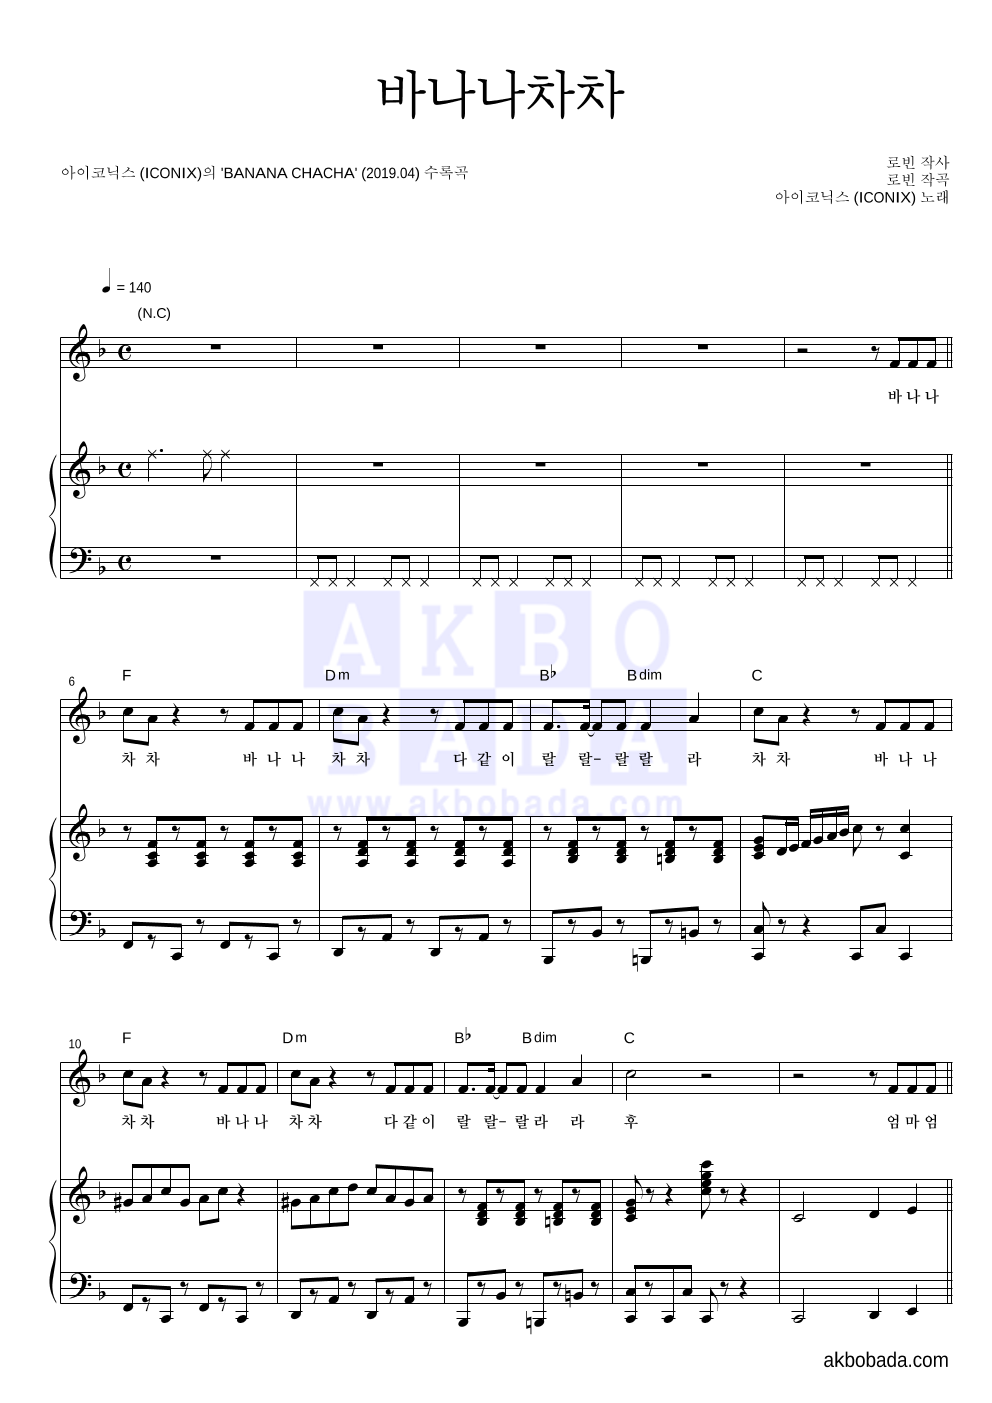 아이코닉스 (ICONIX) - 바나나차차 피아노 3단 악보 